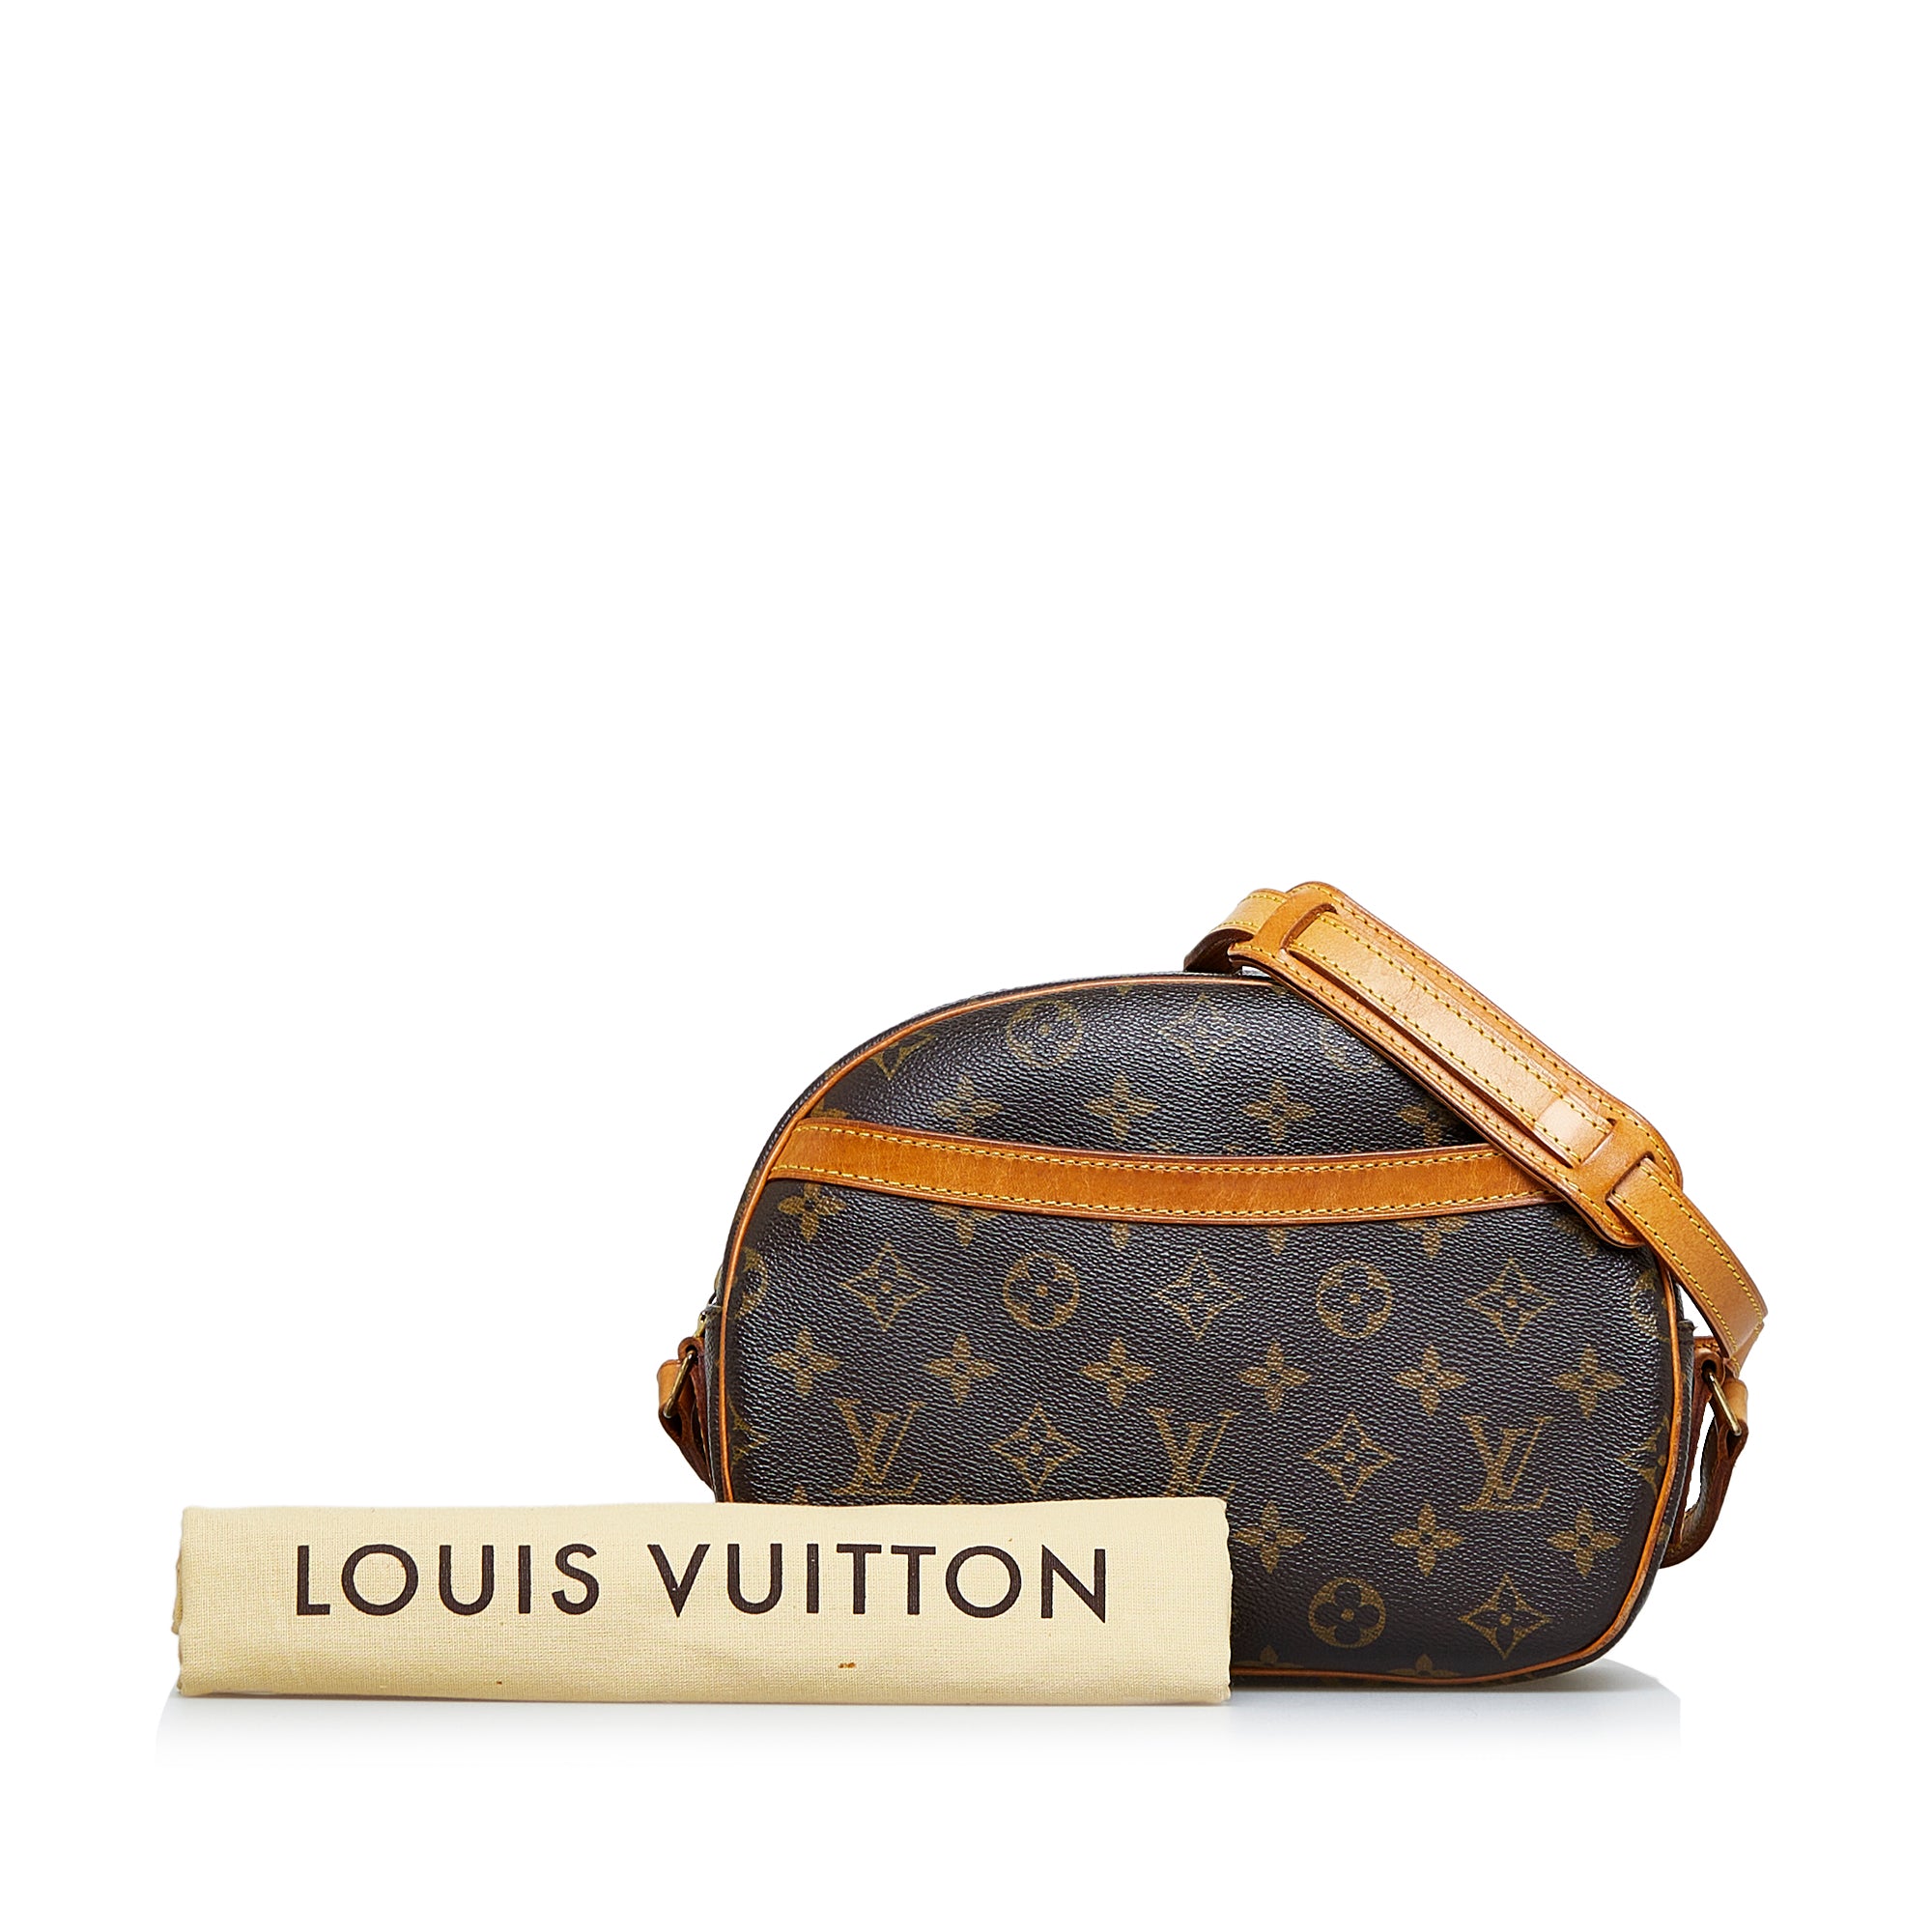 Louis Vuitton Blois Handbag Review 